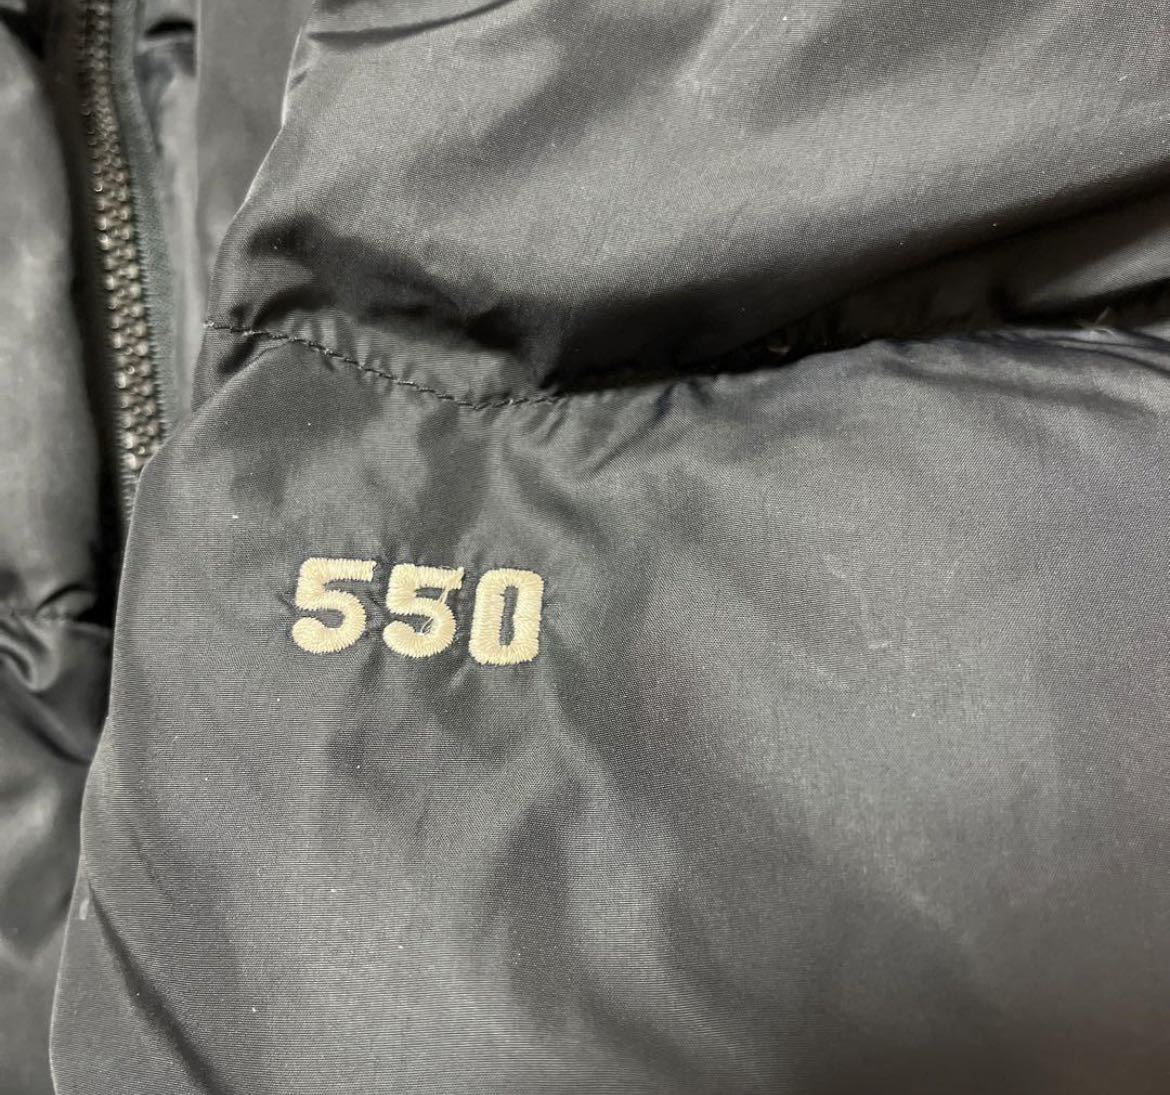 THE NORTH FACE ノースフェイス ダウンジャケット 550フィルパワー ヌプシ ワンポイント刺繍ロゴ シンプルロゴ ブラック XL ナイロン